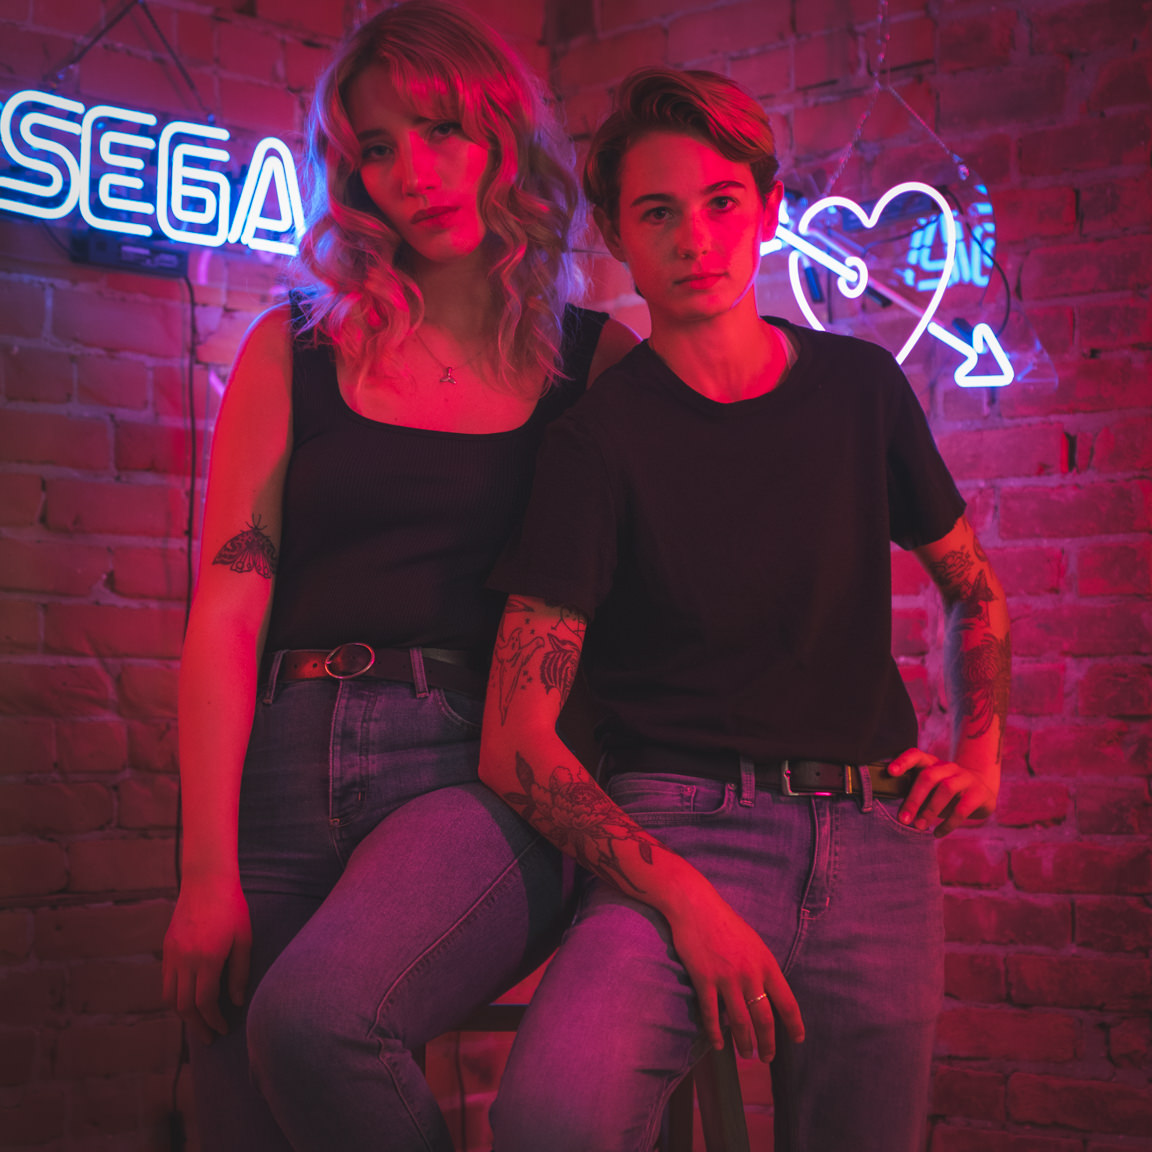 couple at neon signs at snap foto club